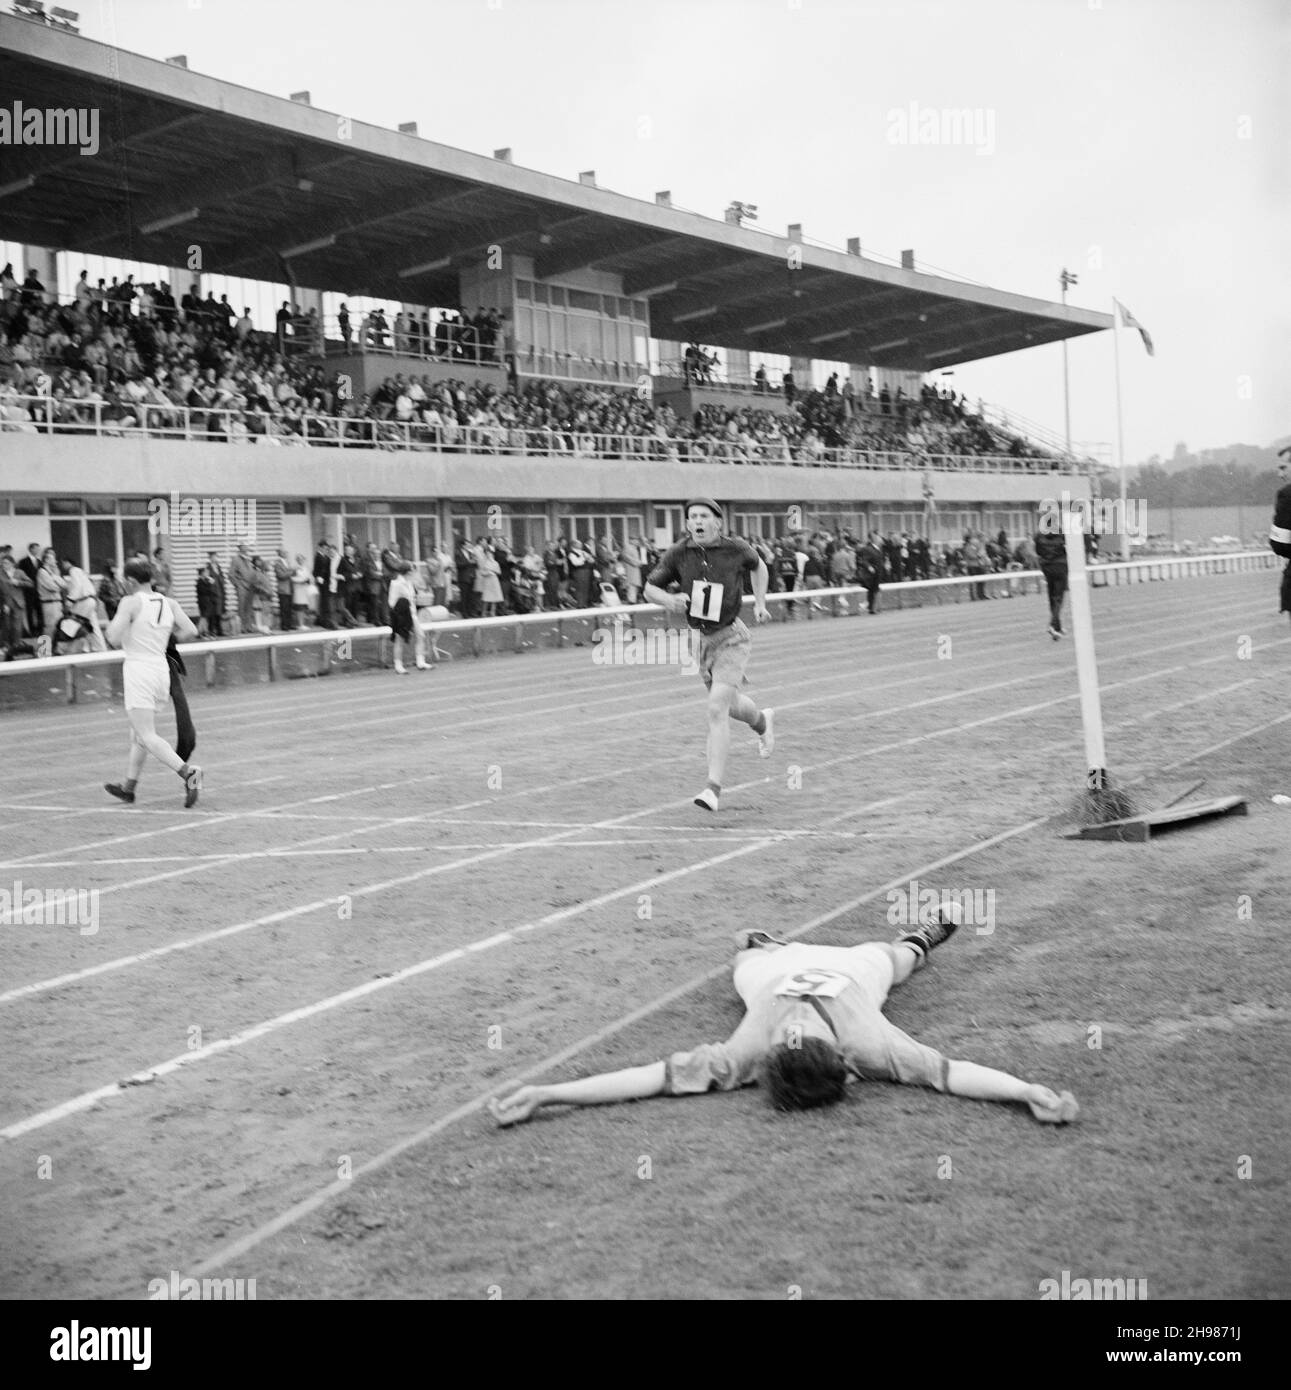 Copthall Stadium, Hendon, Barnett, London, 25/06/1966. Ein Teilnehmer brach am Boden zusammen, nachdem er ein Rennen beendet hatte, das während des jährlichen Laing Sports Day im Copthall Stadium stattfand. Im Jahr 1966 fand am 25th. Juni der jährliche Laing Employees' Sports Day im Copthall Stadium in Hendon statt. Es war das erste Mal, dass die Veranstaltung dort stattfand, nachdem zuvor der Laing Sports Ground in Elstree stattgefunden hatte. Eine Reihe von Veranstaltungen umfasste Leichtathletik und einen Fußballwettbewerb, und die Teilnehmer reisten von den regionalen Büros und Standorten des Unternehmens, darunter aus Schottland und Carlisle. Es gab auch einen Jahrmarkt, Marchi Stockfoto